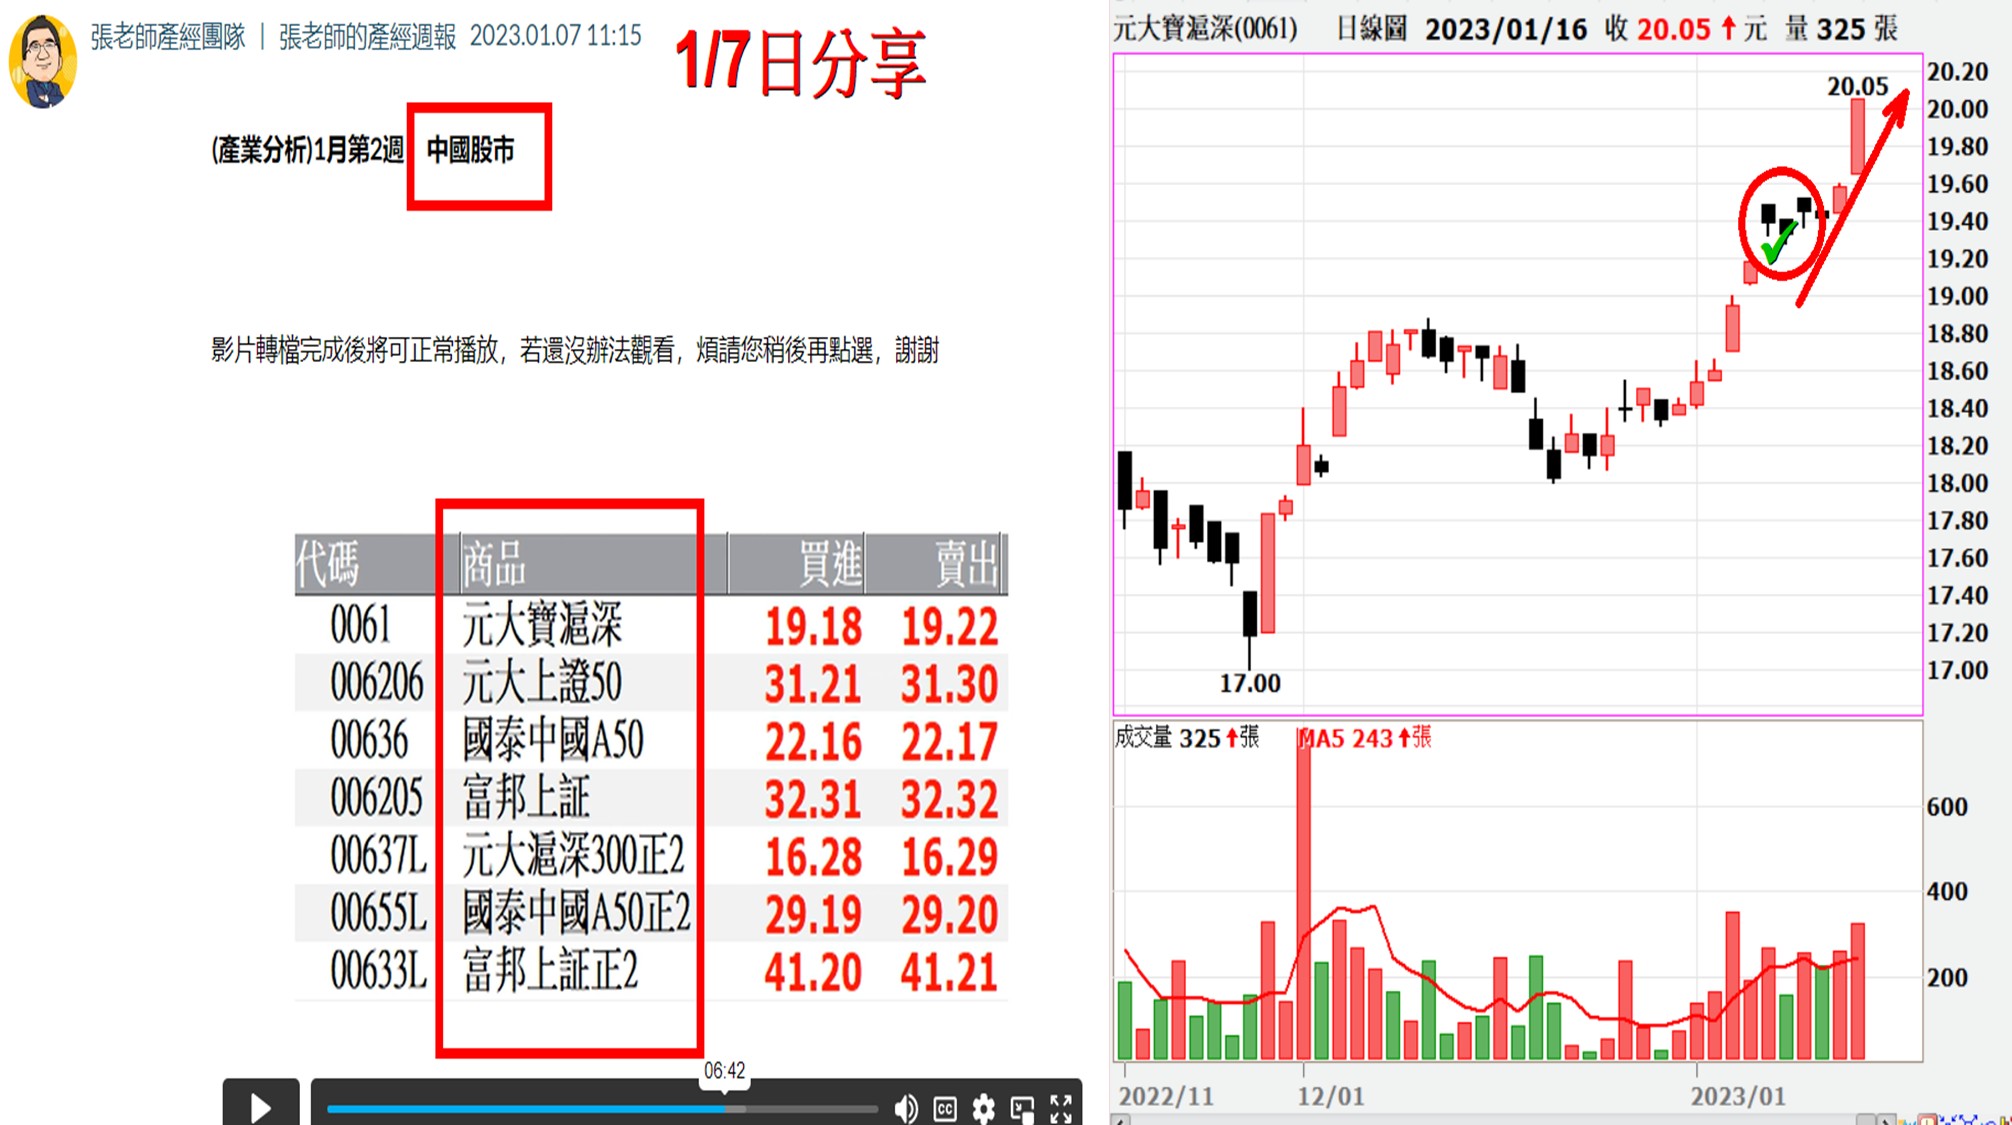 中國經濟下修 張老師力排眾議 預先告知 看好中國股市